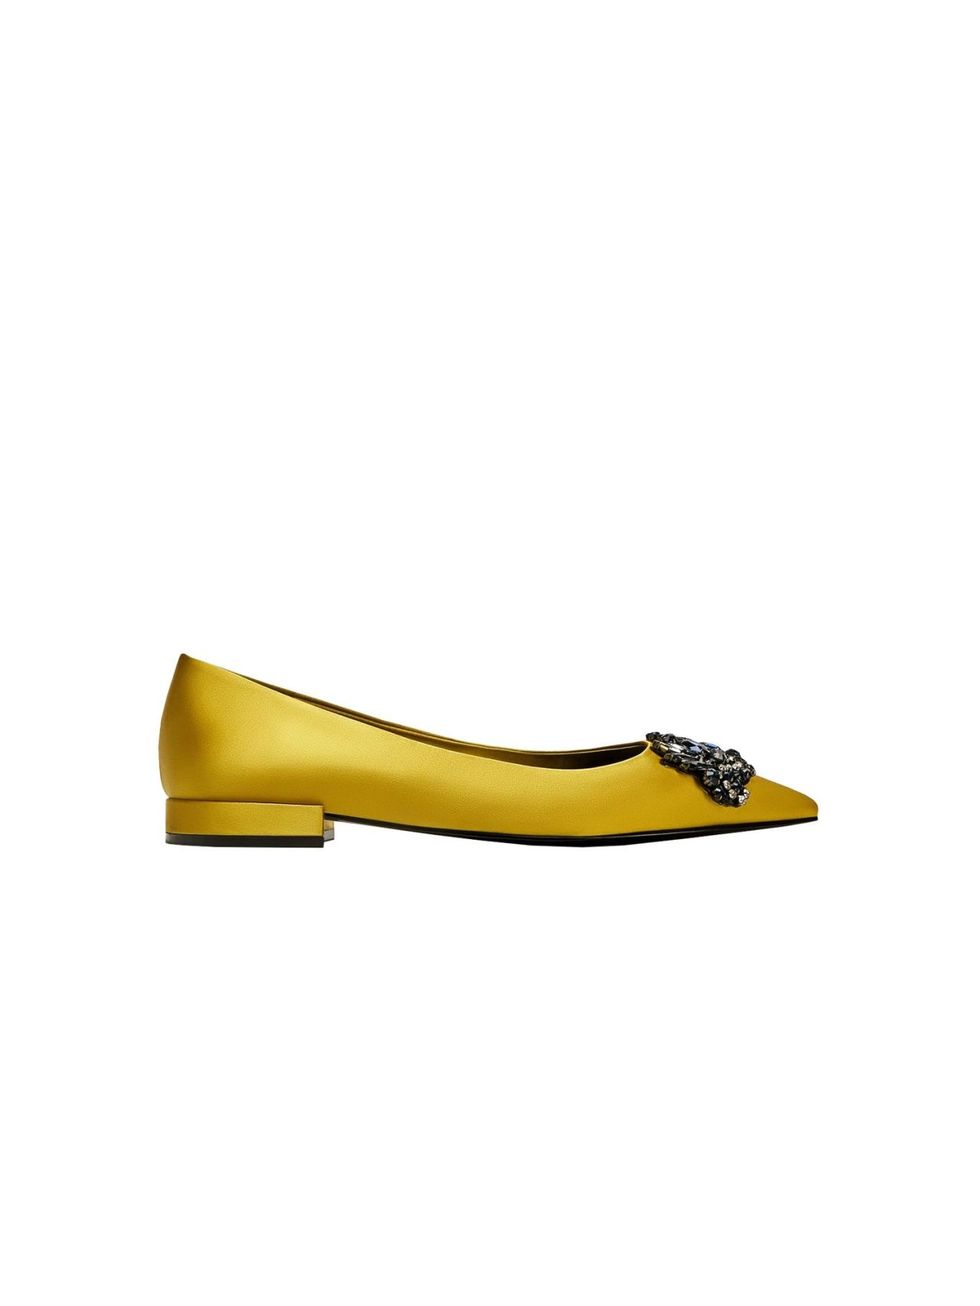 Footwear, Yellow, Shoe, Ballet flat, Court shoe, Beige, Leather, 